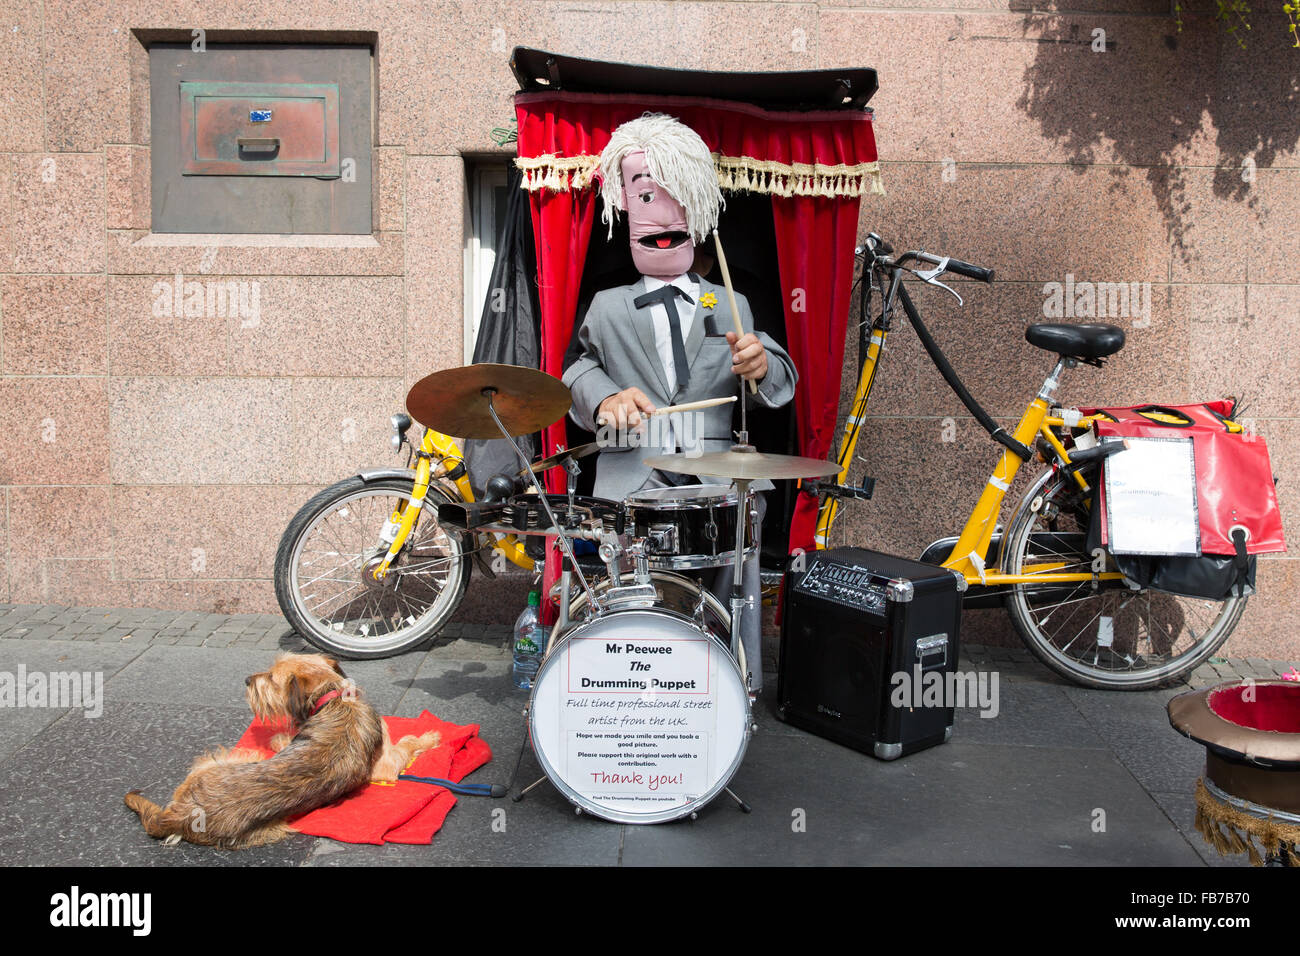 Street performer, Edinburgh Fringe festival. Stock Photo